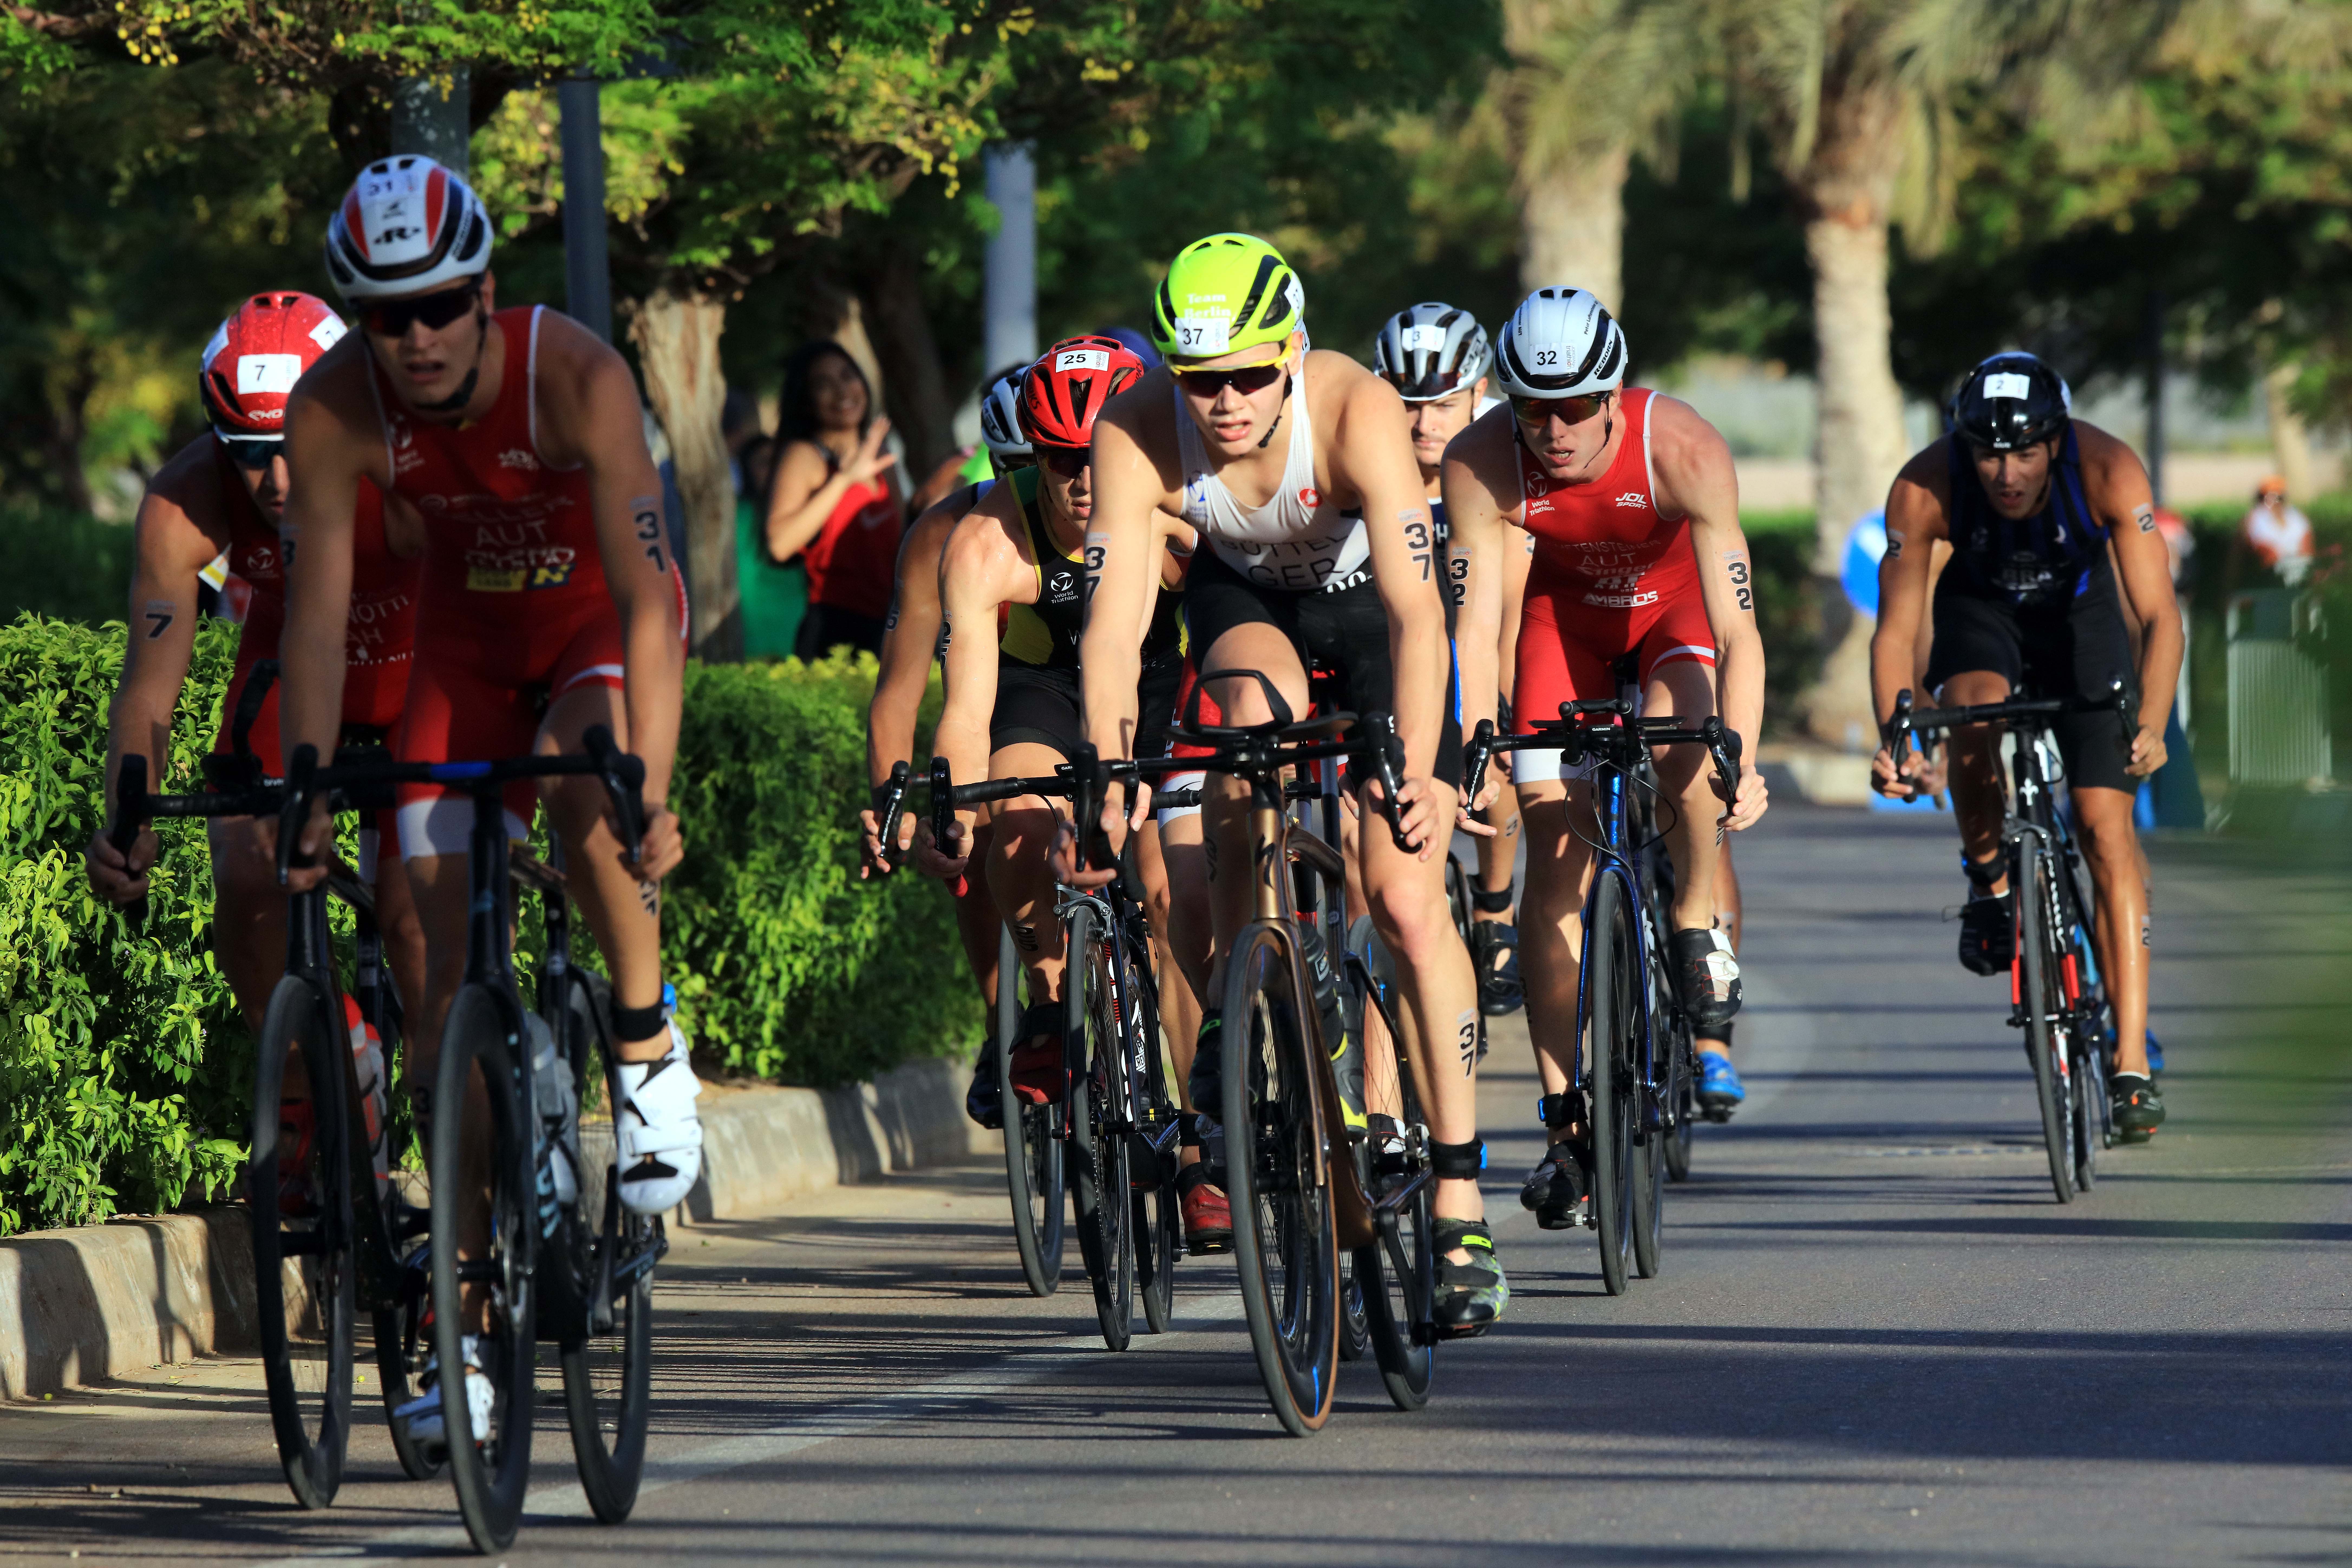 AQABA, Para atlet berkompetisi dalam nomor bersepeda pada ajang Asia Triathlon Cup Aqaba 2022 di kota pelabuhan Aqaba, Yordania selatan, pada 1 Oktober 2022. (Xinhua/Mohammad Abu Ghosh)